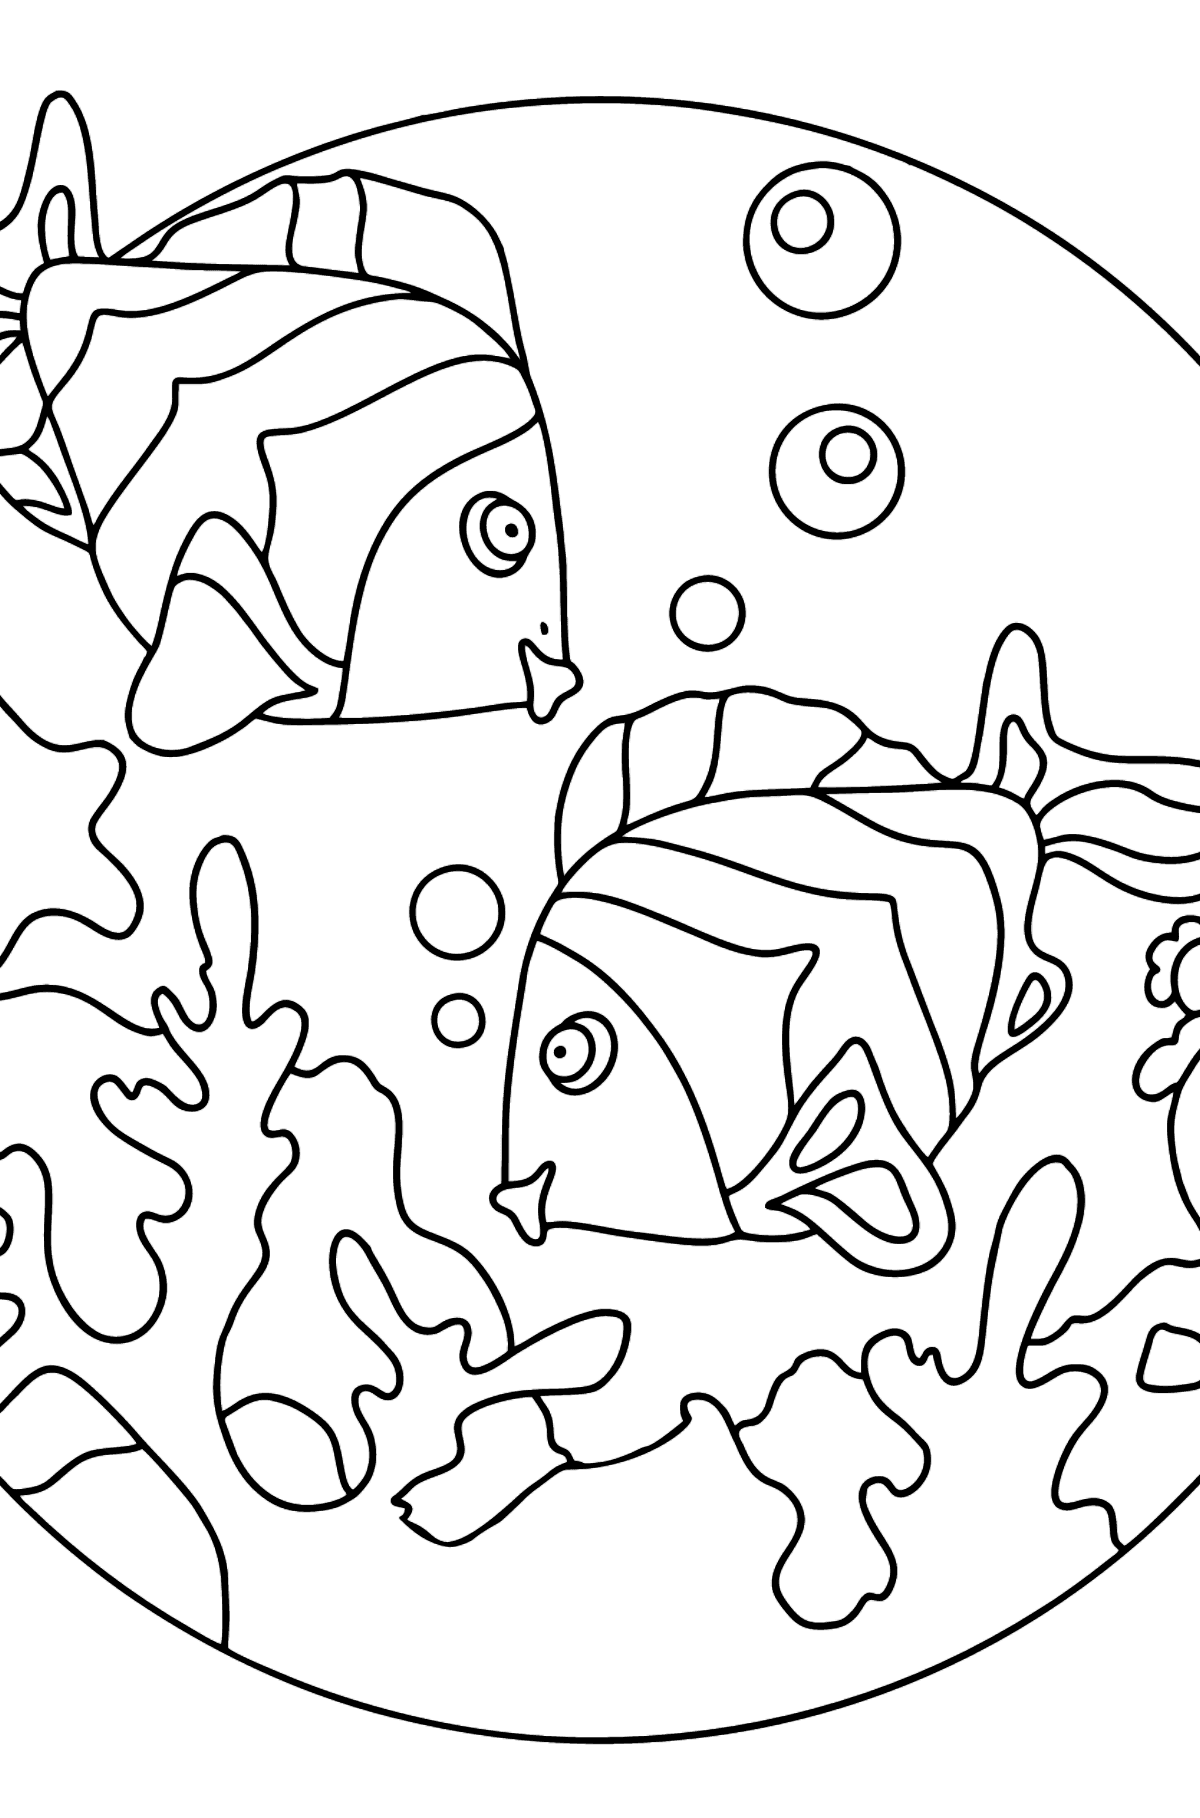 Coloriage - Les poissons nagent ensemble - Coloriages pour les Enfants